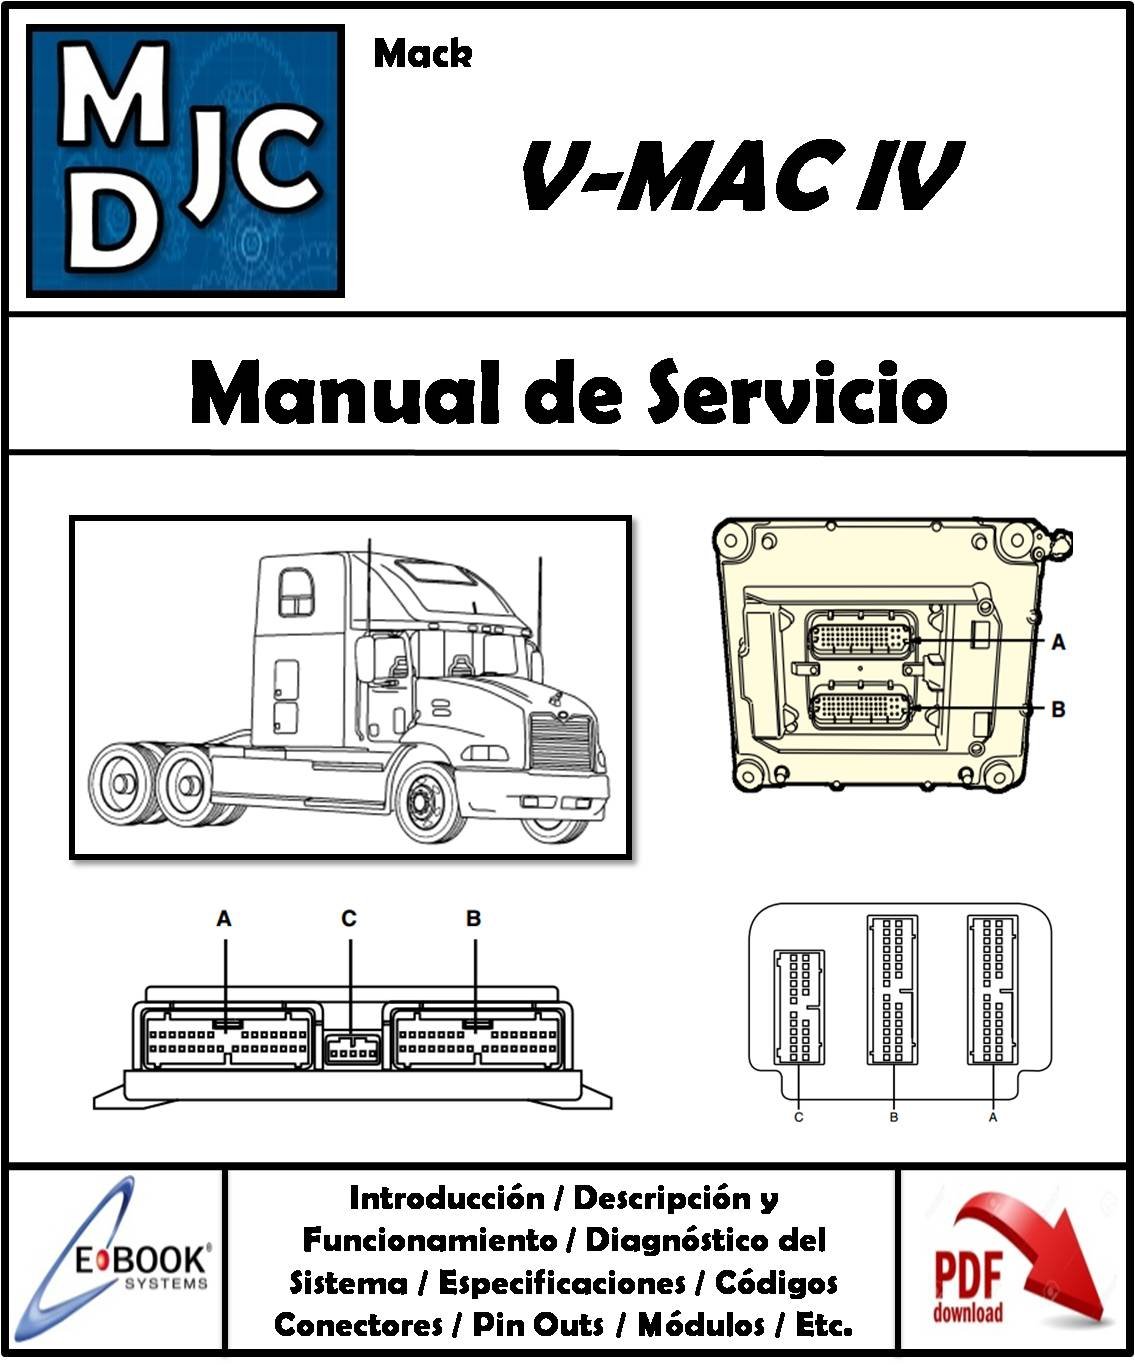 Mack V-MAC IV